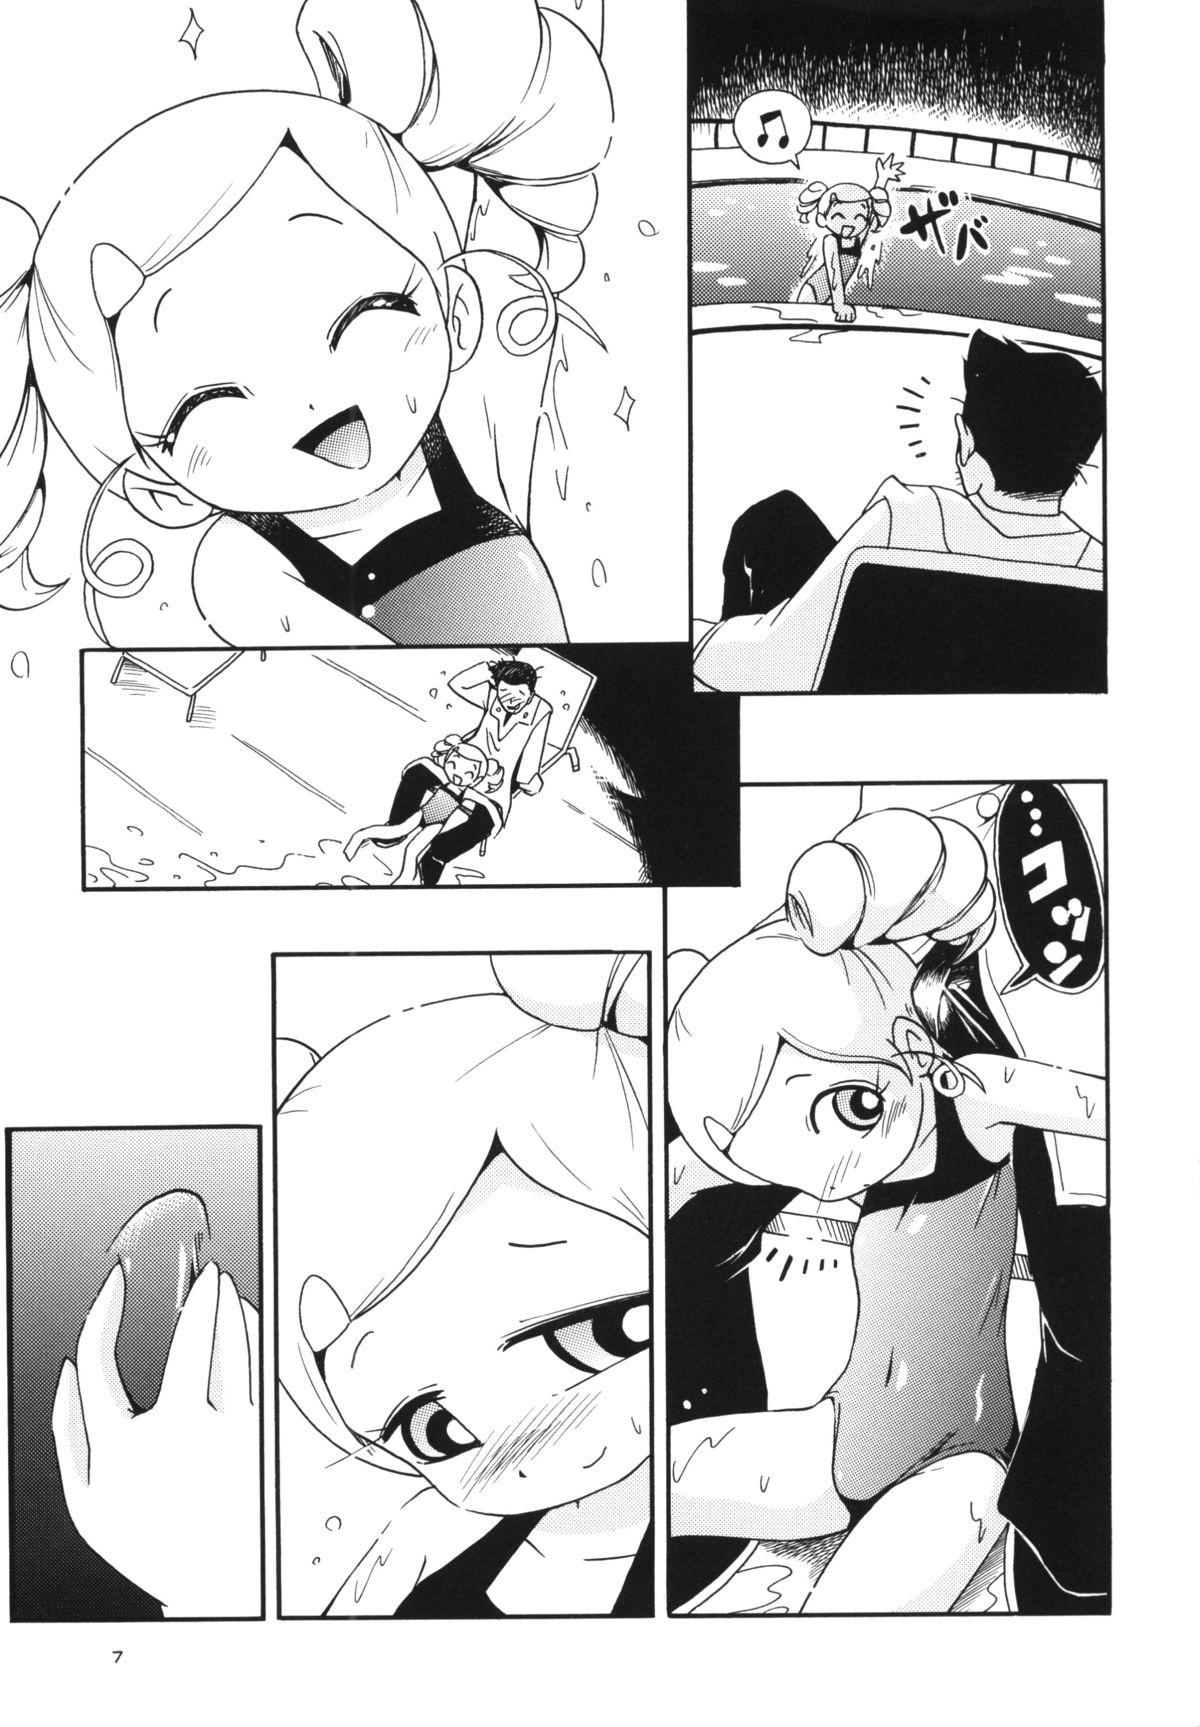 Thief Demashita - Ojamajo doremi Powerpuff girls z Toy - Page 6